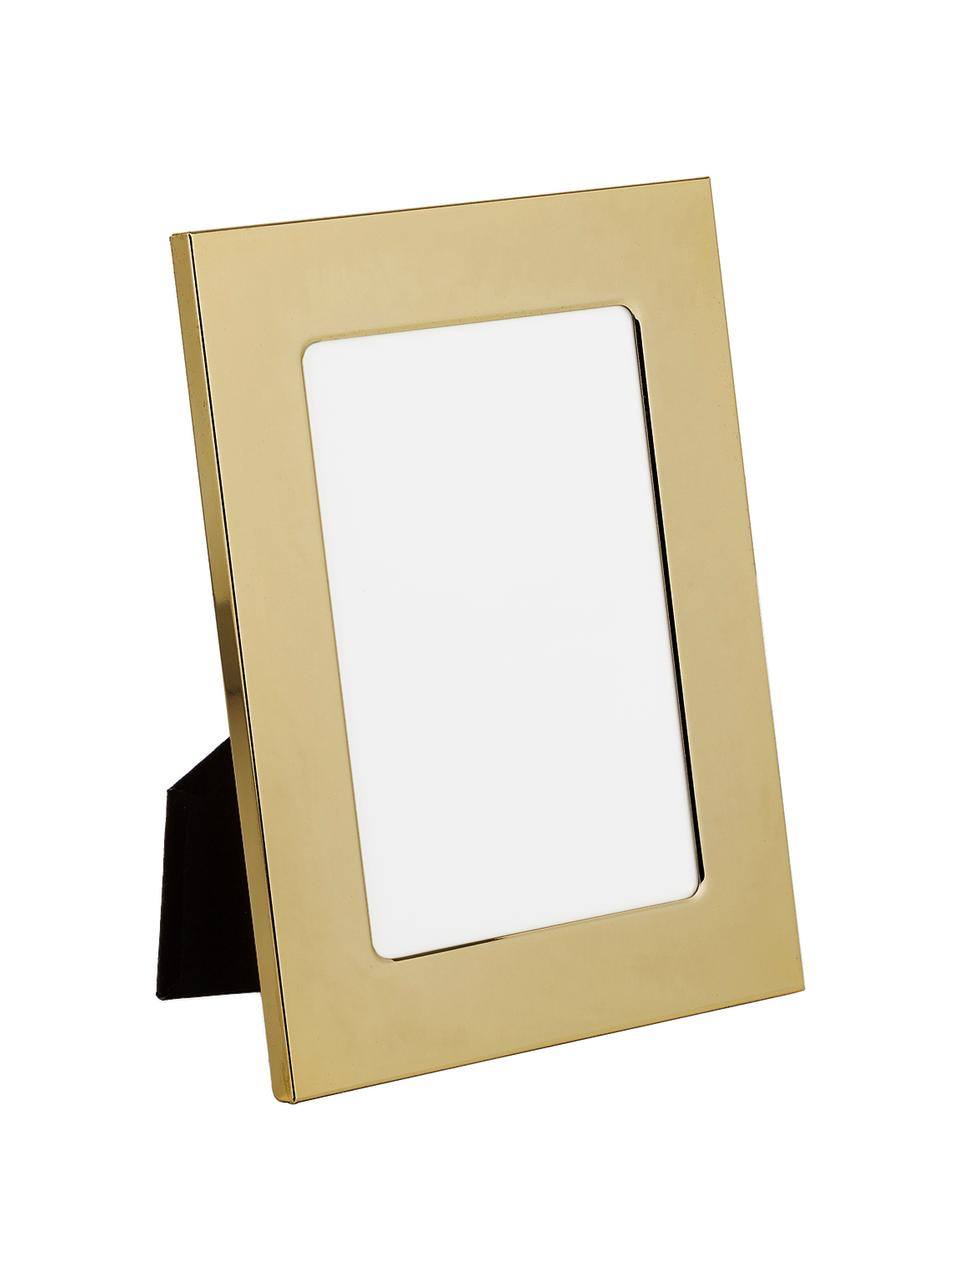 Bilderrahmen Memory, Rahmen: Eisen, hochglanz lackiert, Front: Glas, spiegelnd, Goldfarben, 13 x 18 cm